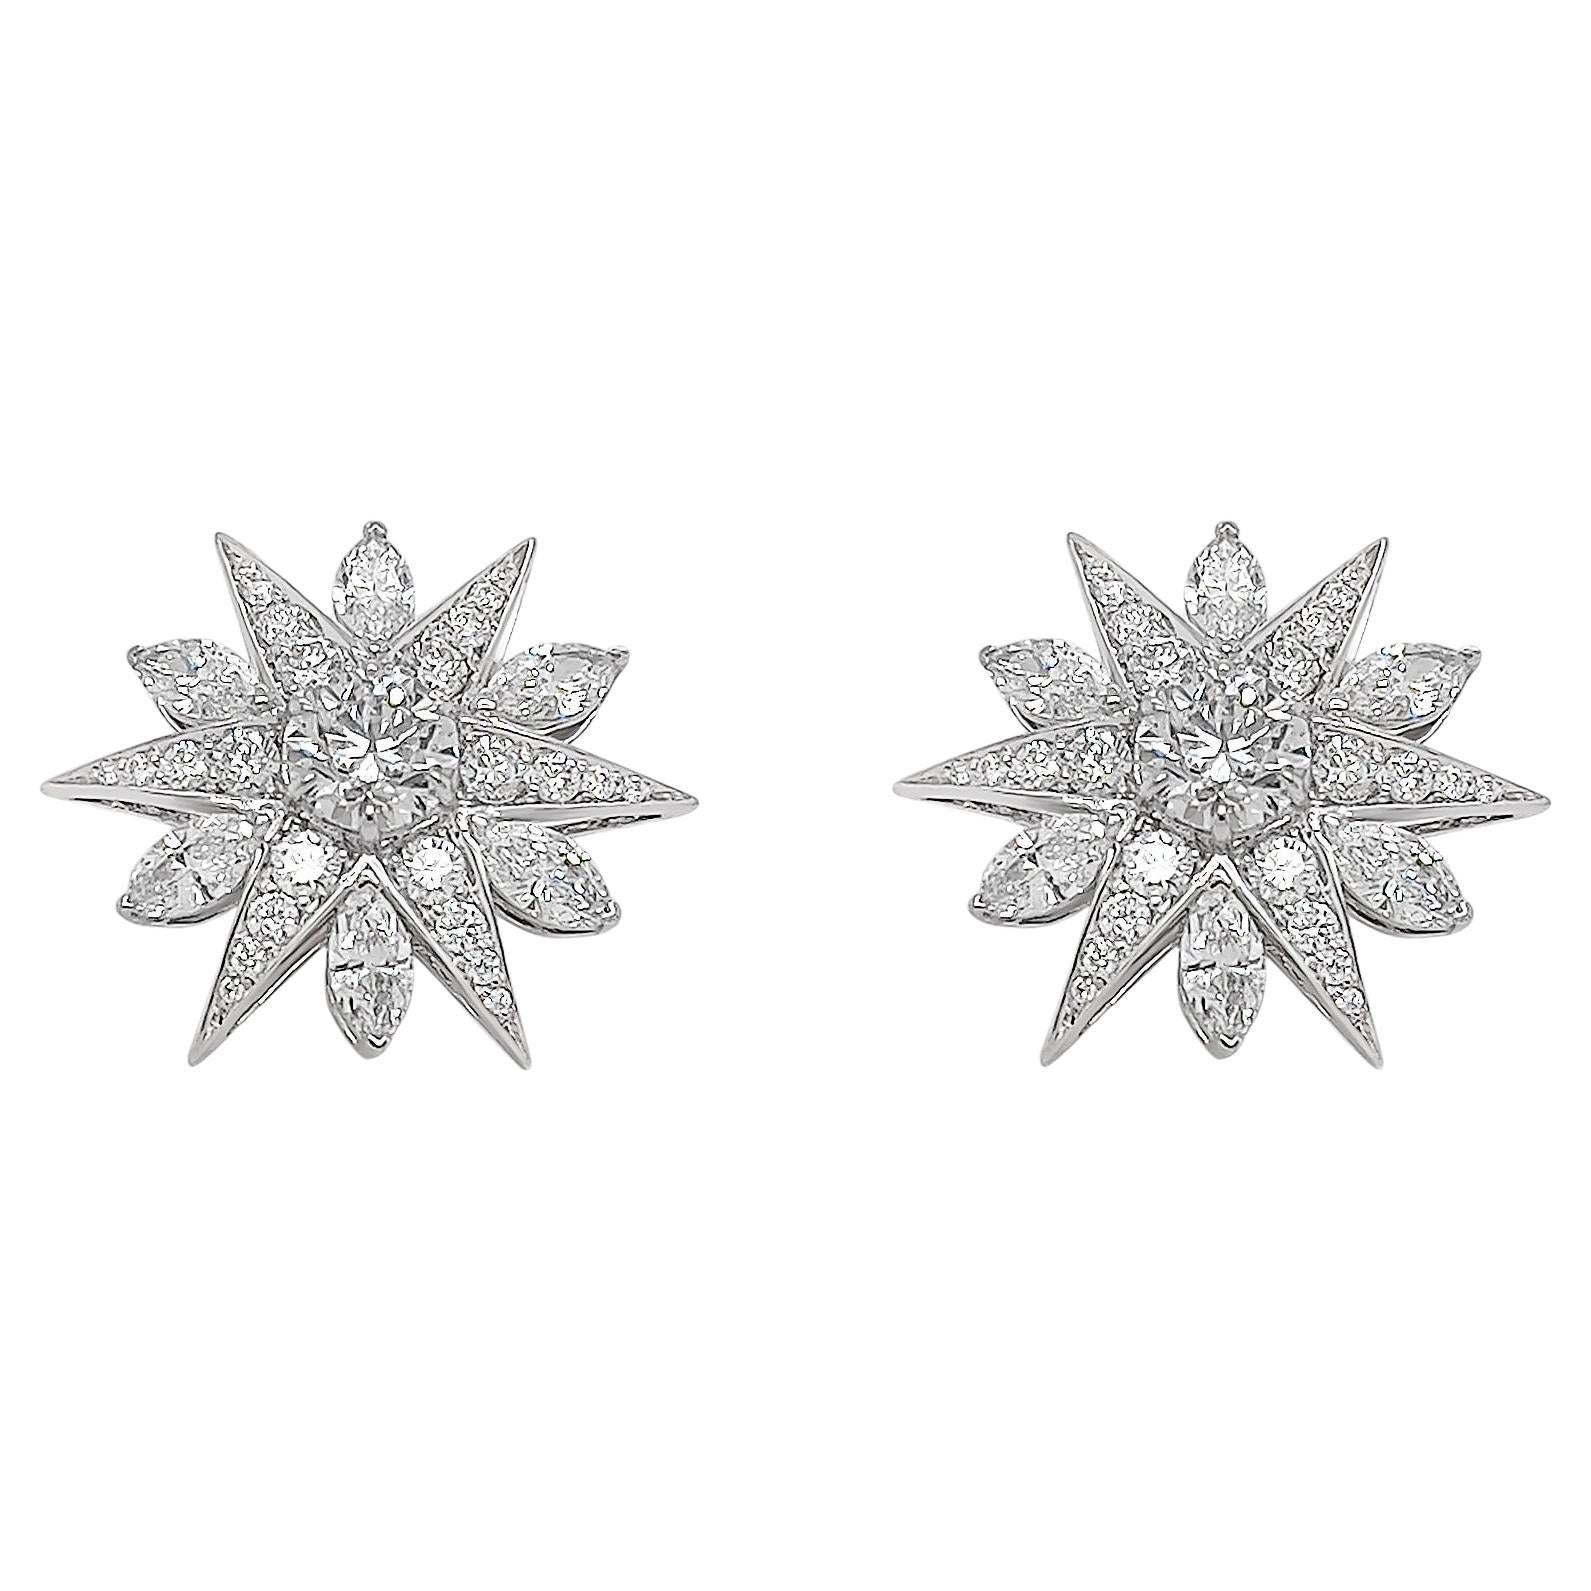 3 Carat Diamond Cluster Earrings in 18k White Gold 